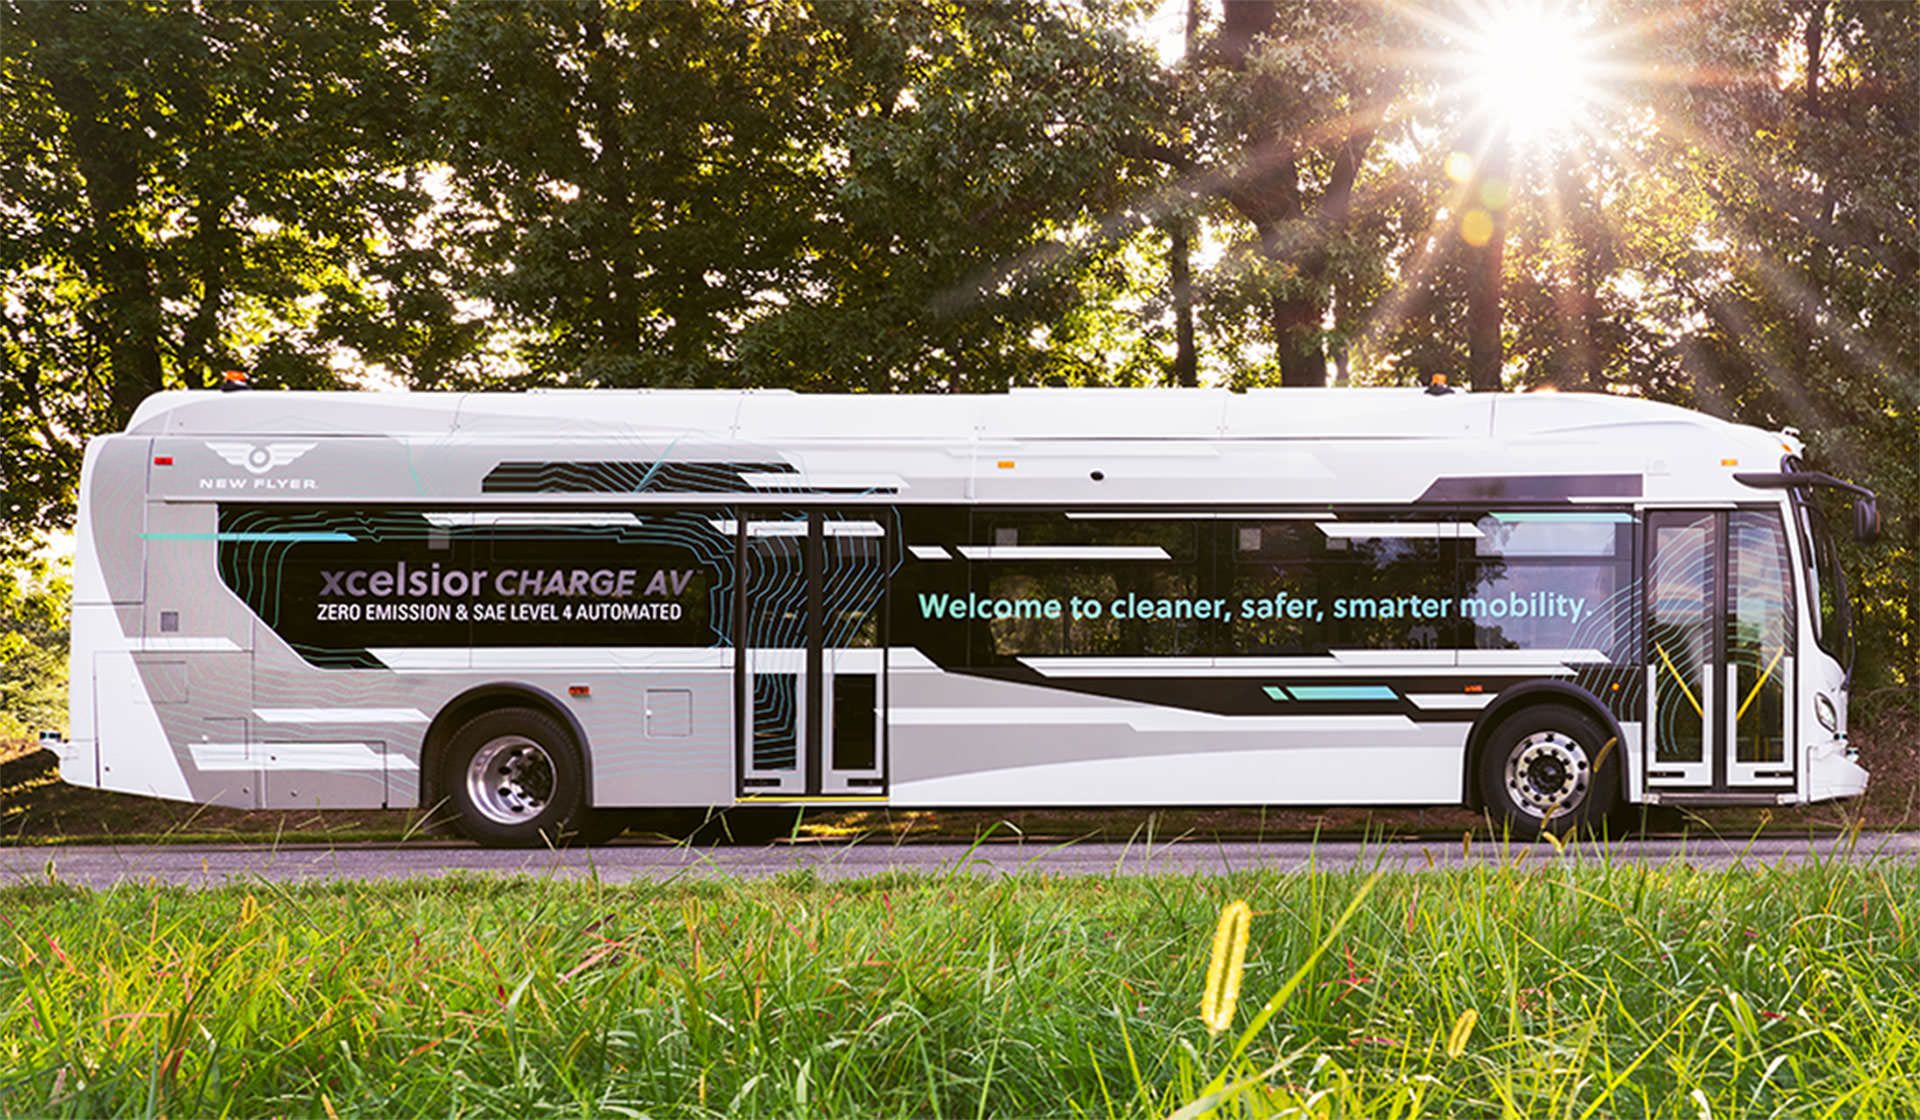 نمای جانبی اتوبوس خودران نیو فلایر / Xcelsior AV Level 4 autonomous transit bus در جاده